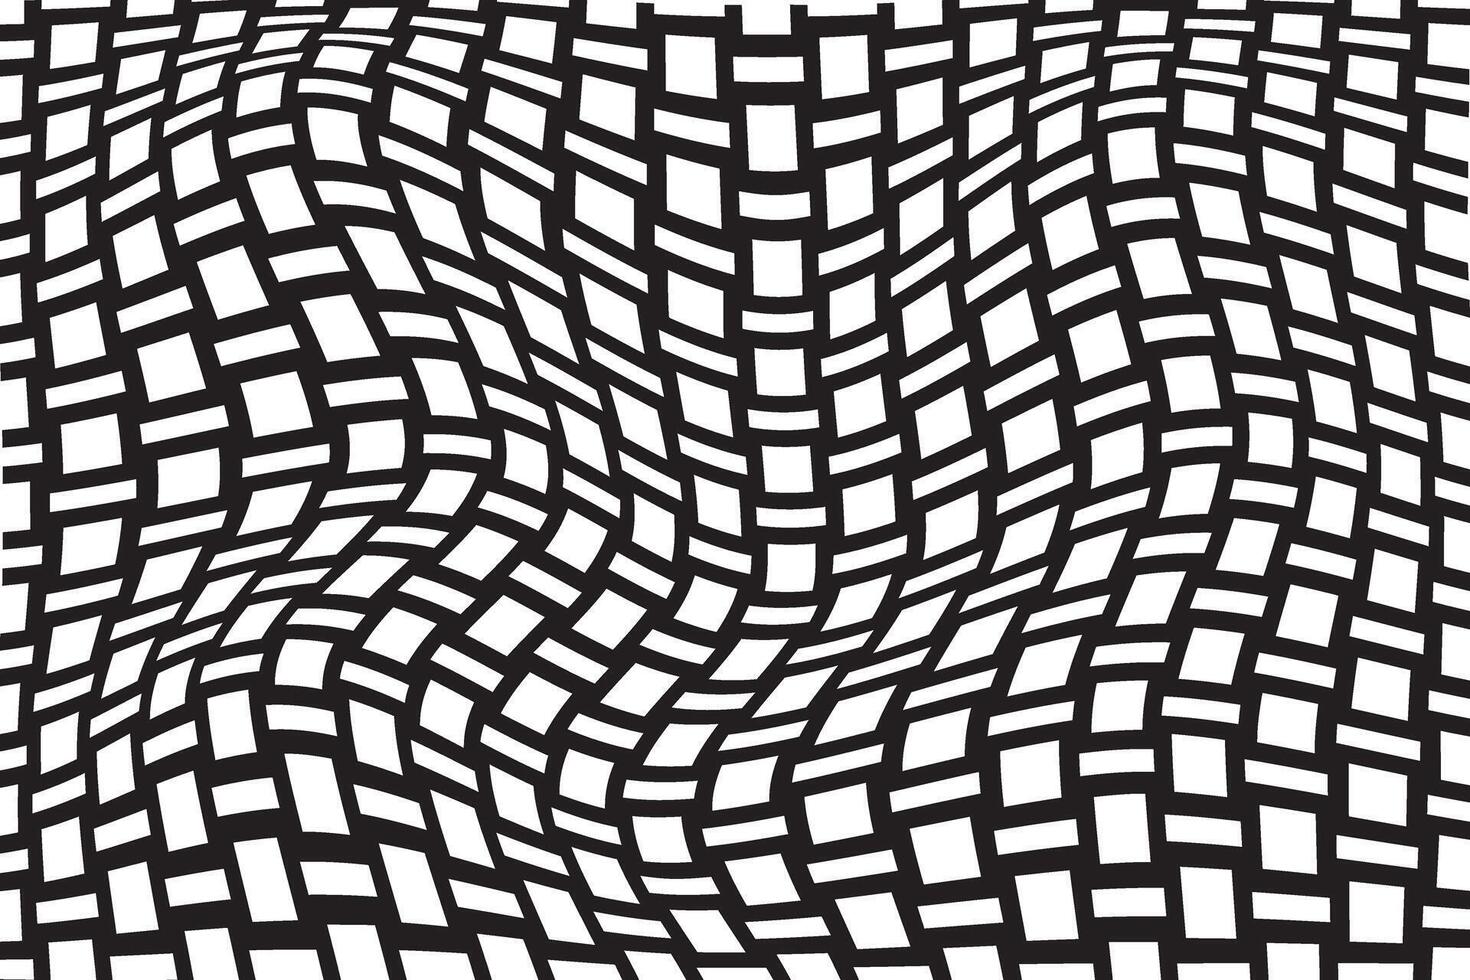 une noir et blanc abstrait image de une noir et blanc rayé motif.a noir et blanc dessin de une labyrinthe avec une noir et blanc modèle abstrait géométrique modèle avec zigzag lignes vecteur